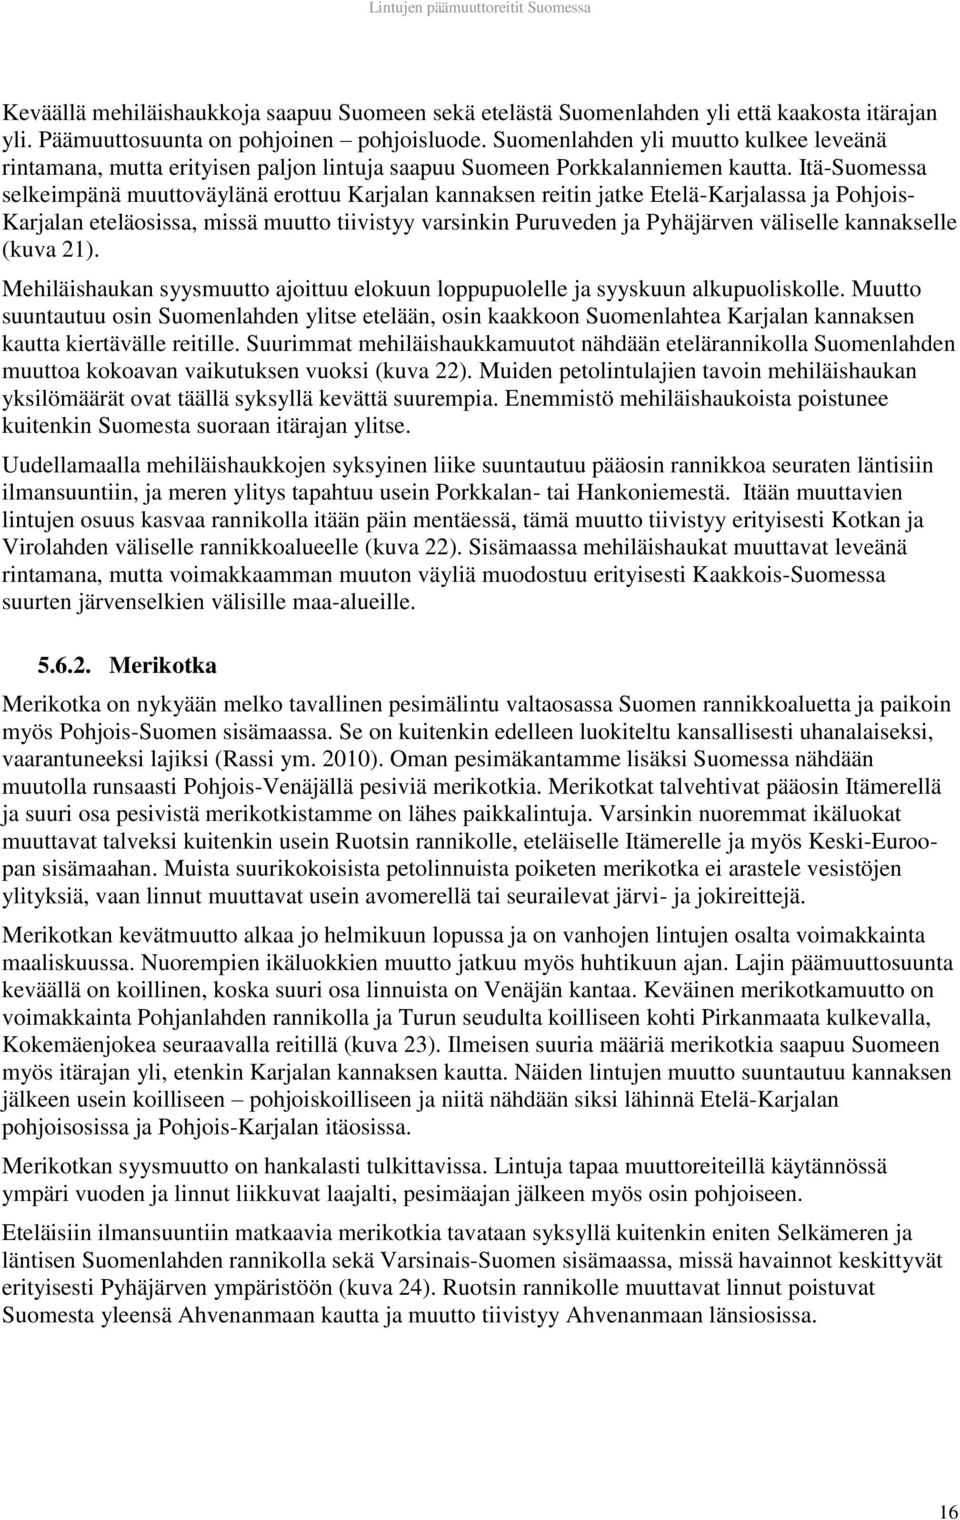 Itä-Suomessa selkeimpänä muuttoväylänä erottuu Karjalan kannaksen reitin jatke Etelä-Karjalassa ja Pohjois- Karjalan eteläosissa, missä muutto tiivistyy varsinkin Puruveden ja Pyhäjärven väliselle